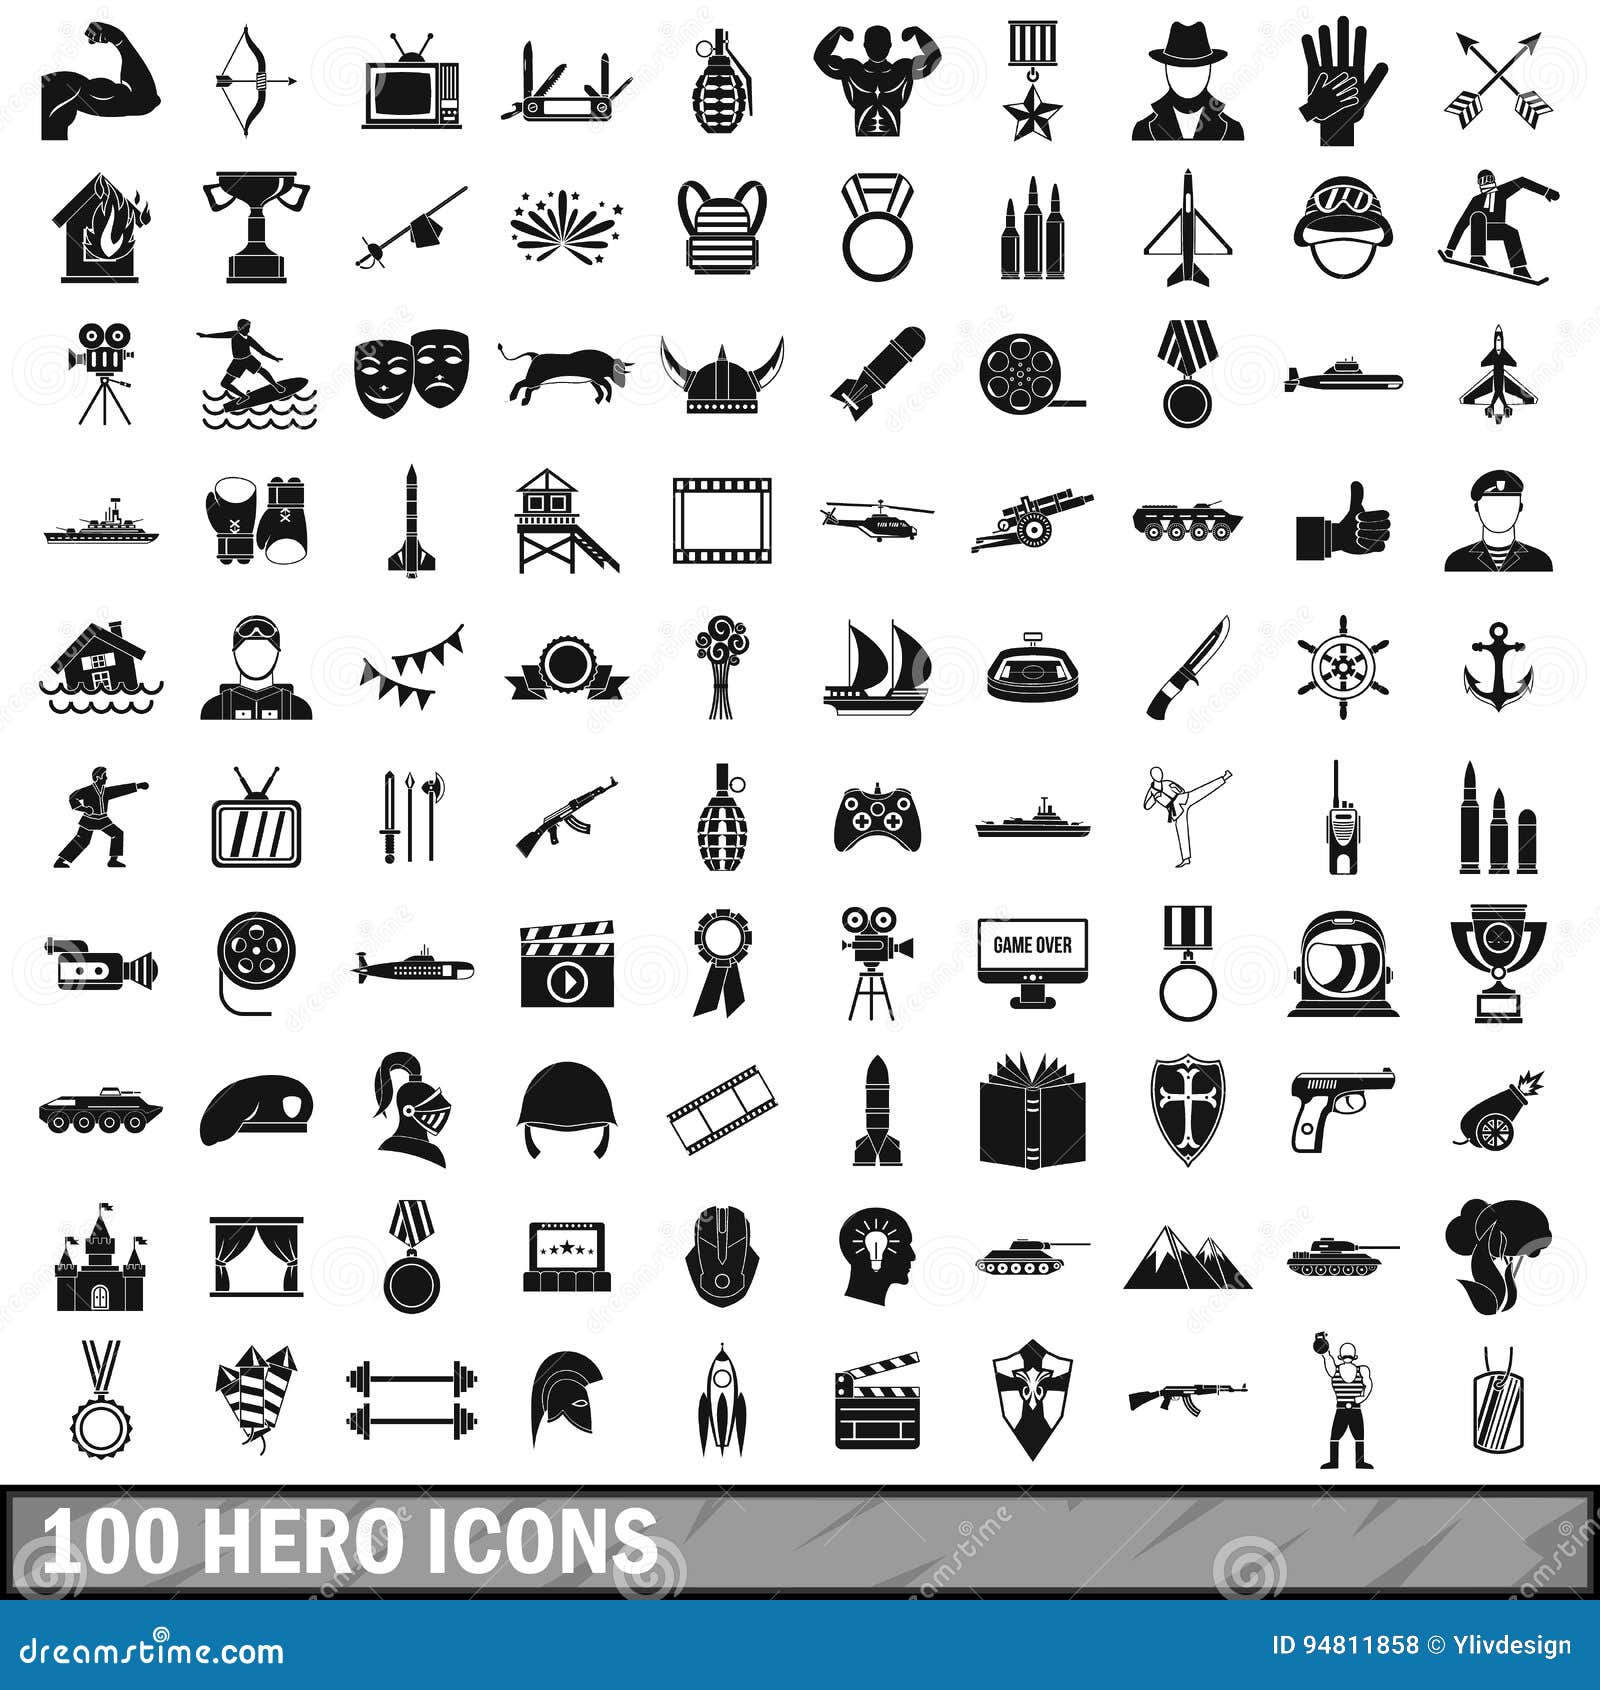 Hero icons